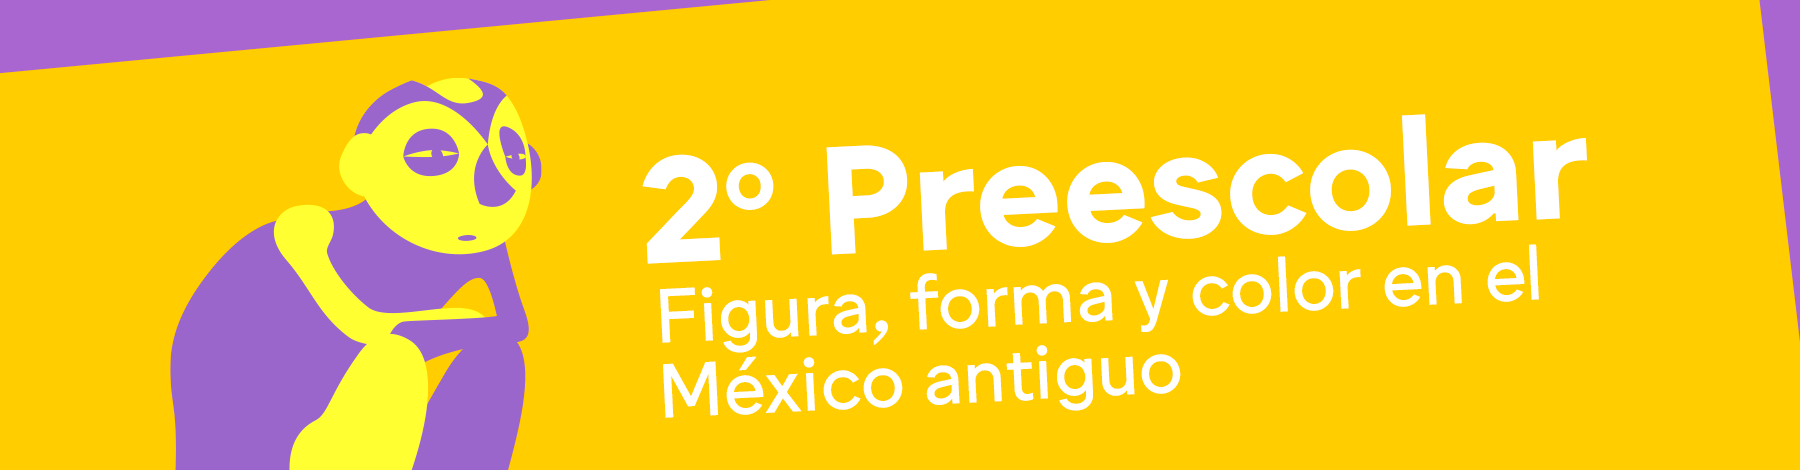 Preescolar | Museo Amparo, Puebla | Museo Amparo, Puebla.